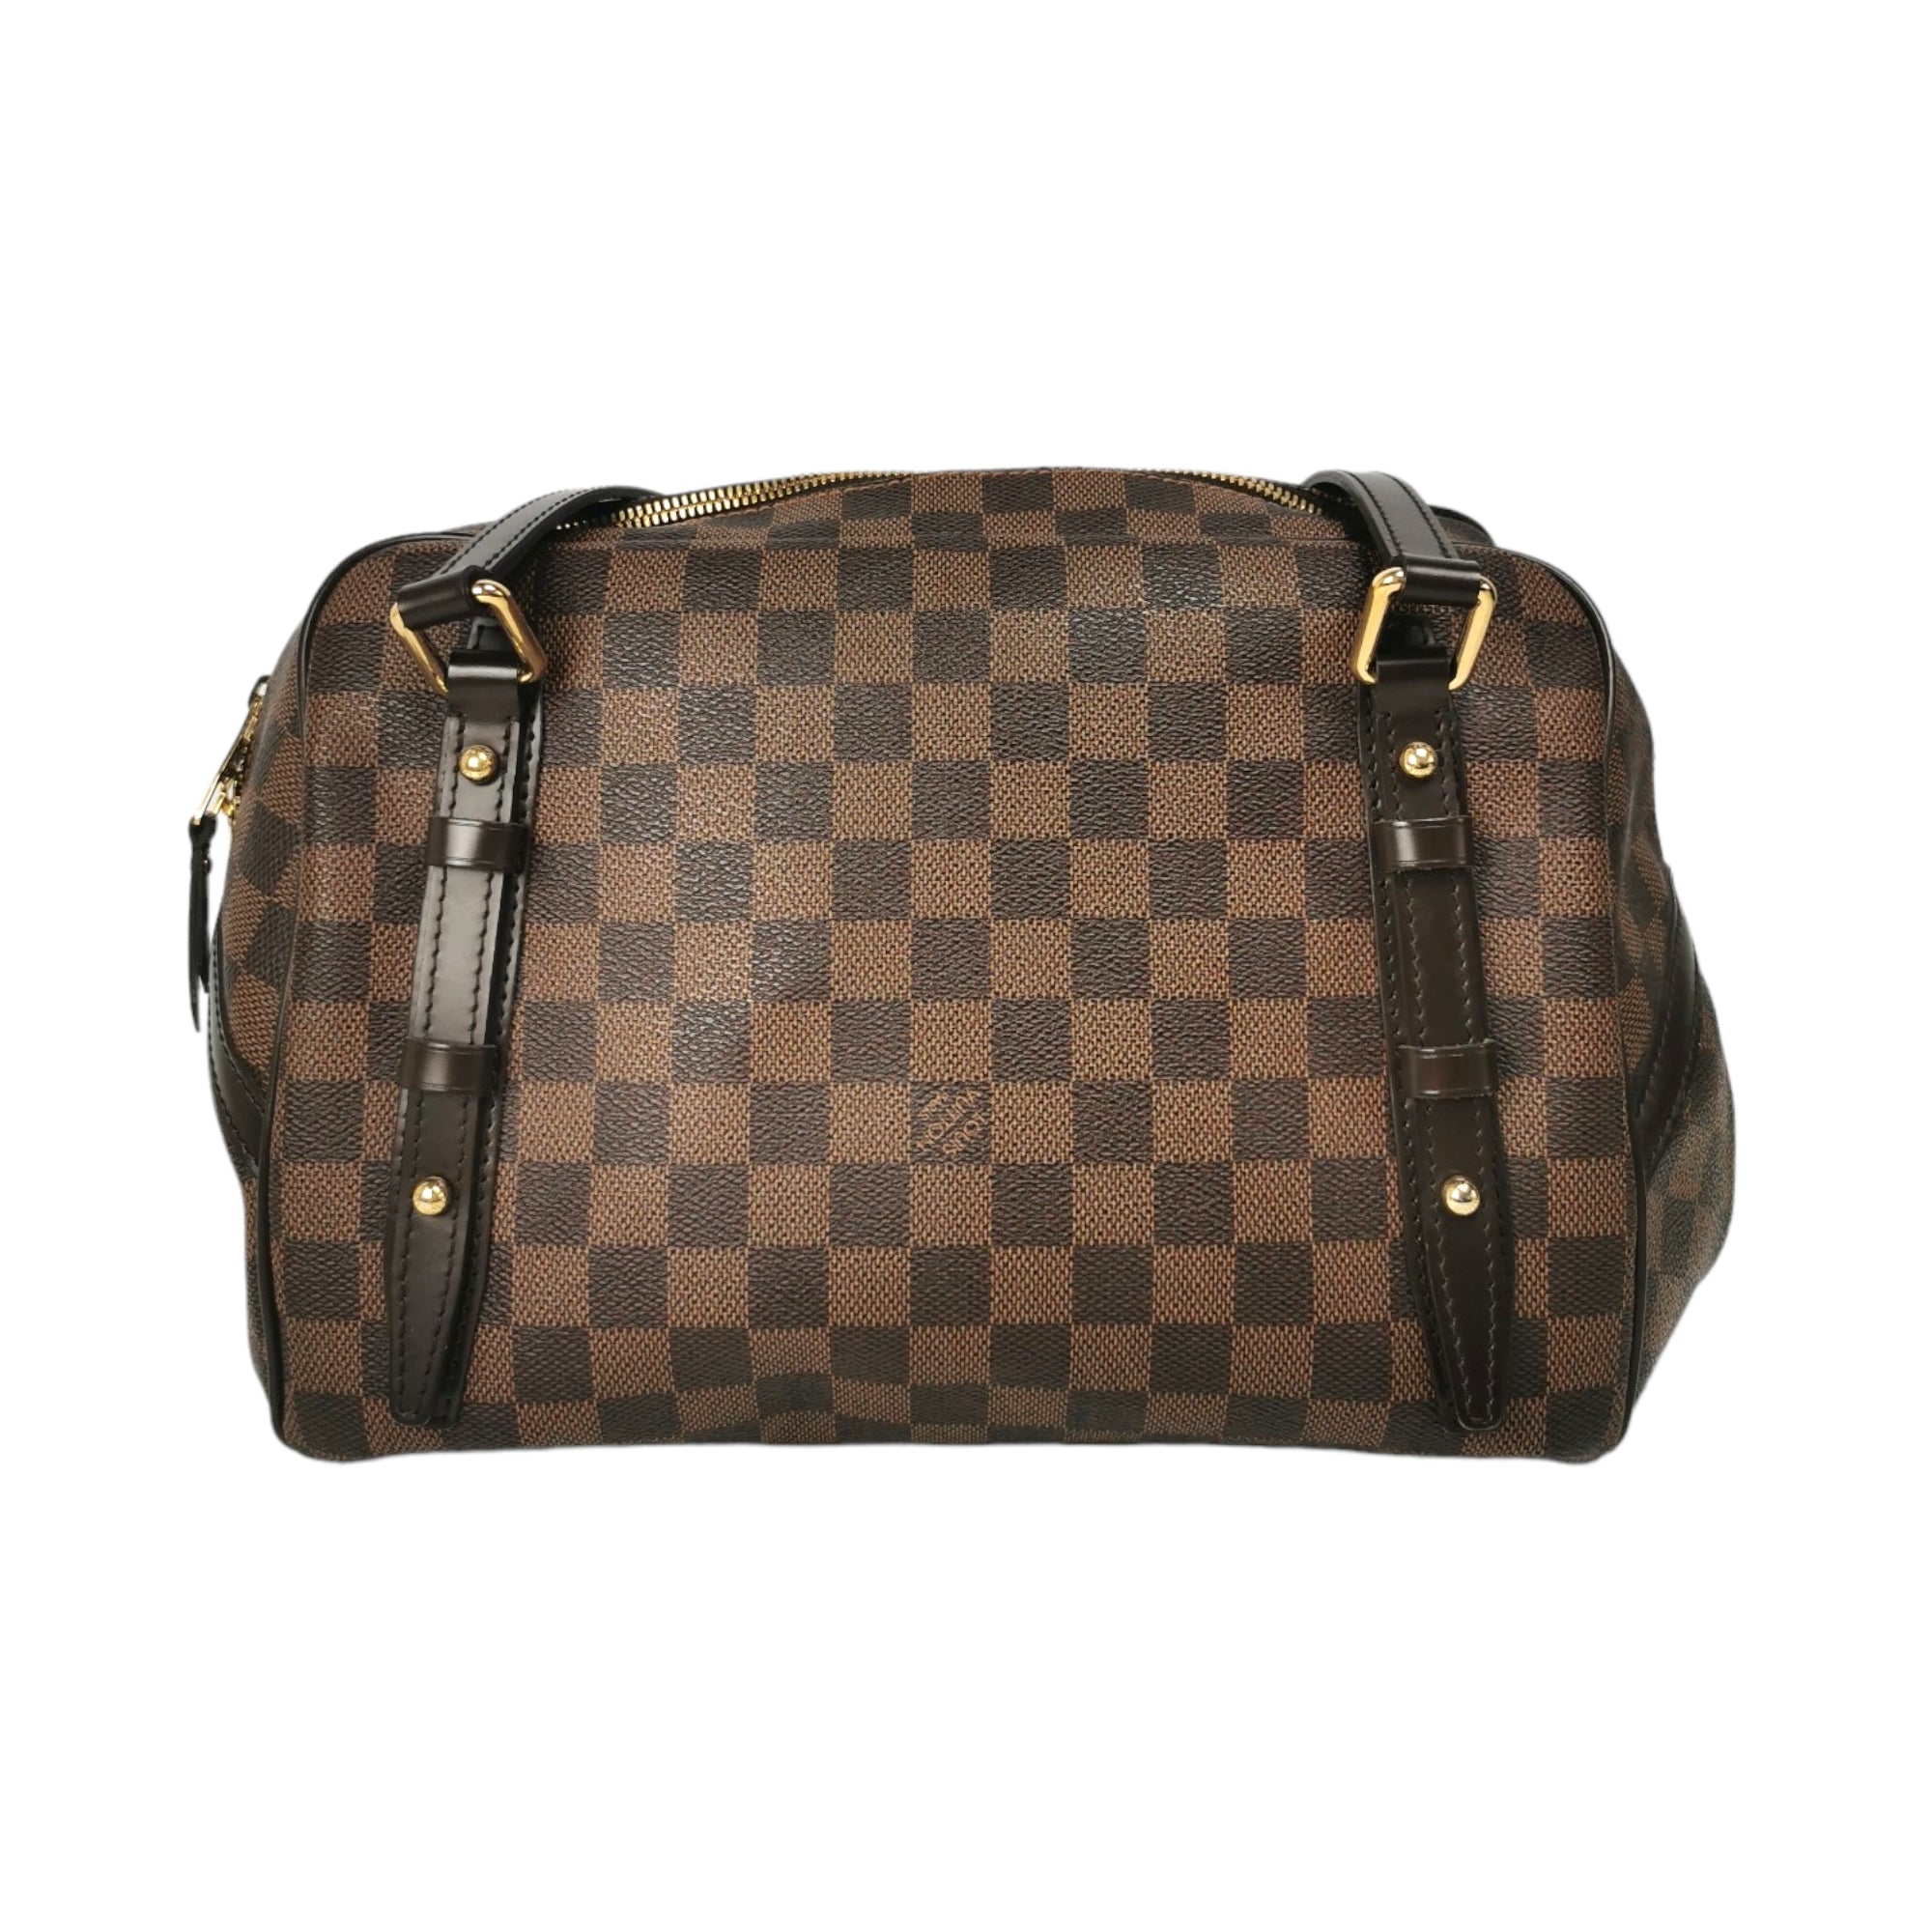 Louis Vuitton Rivington PM Damier Ebene Shoulder Bag on SALE